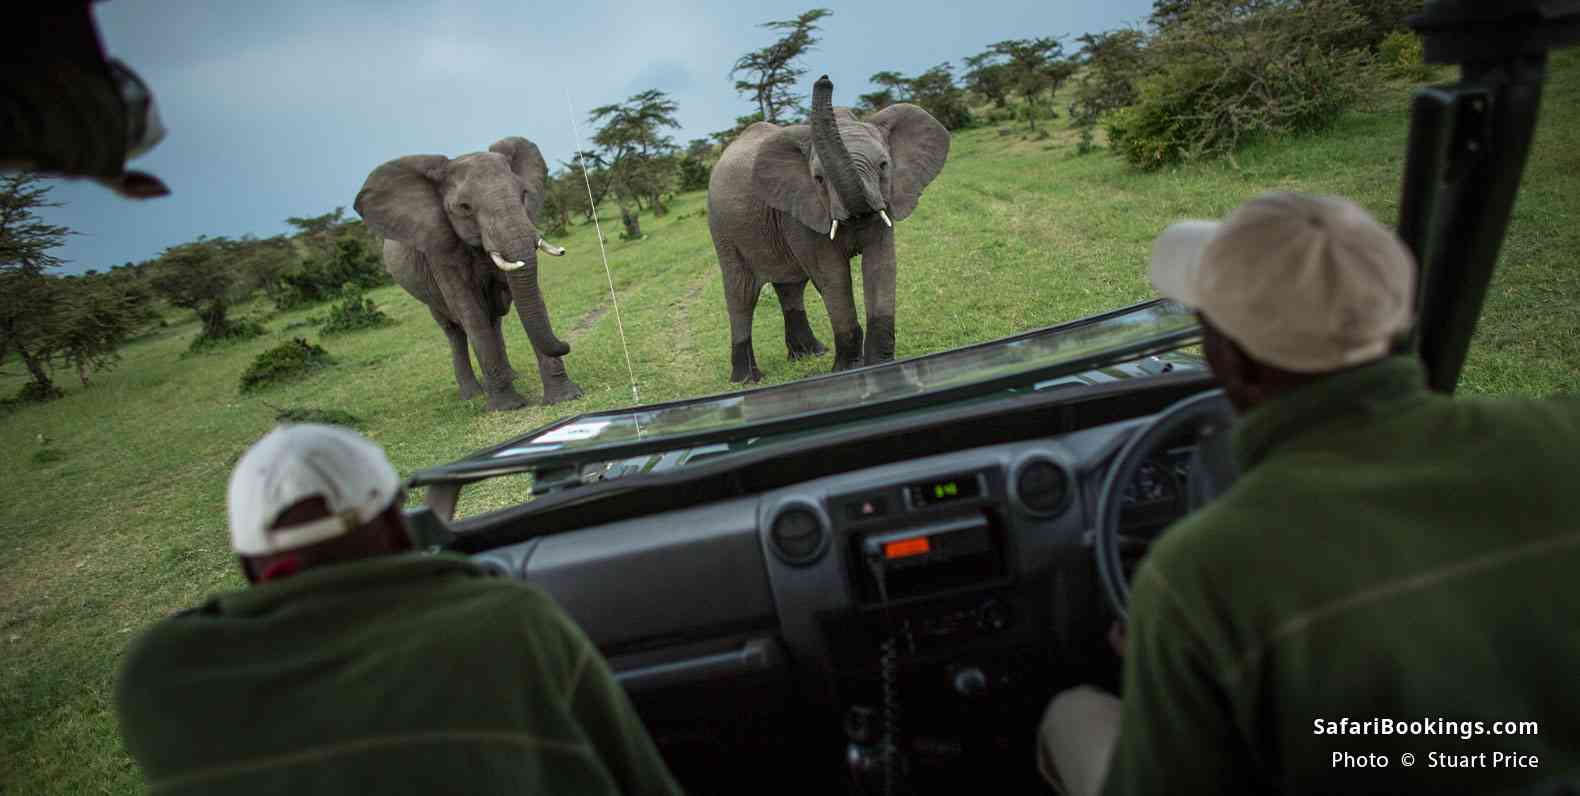 Safari vehicle with elephants